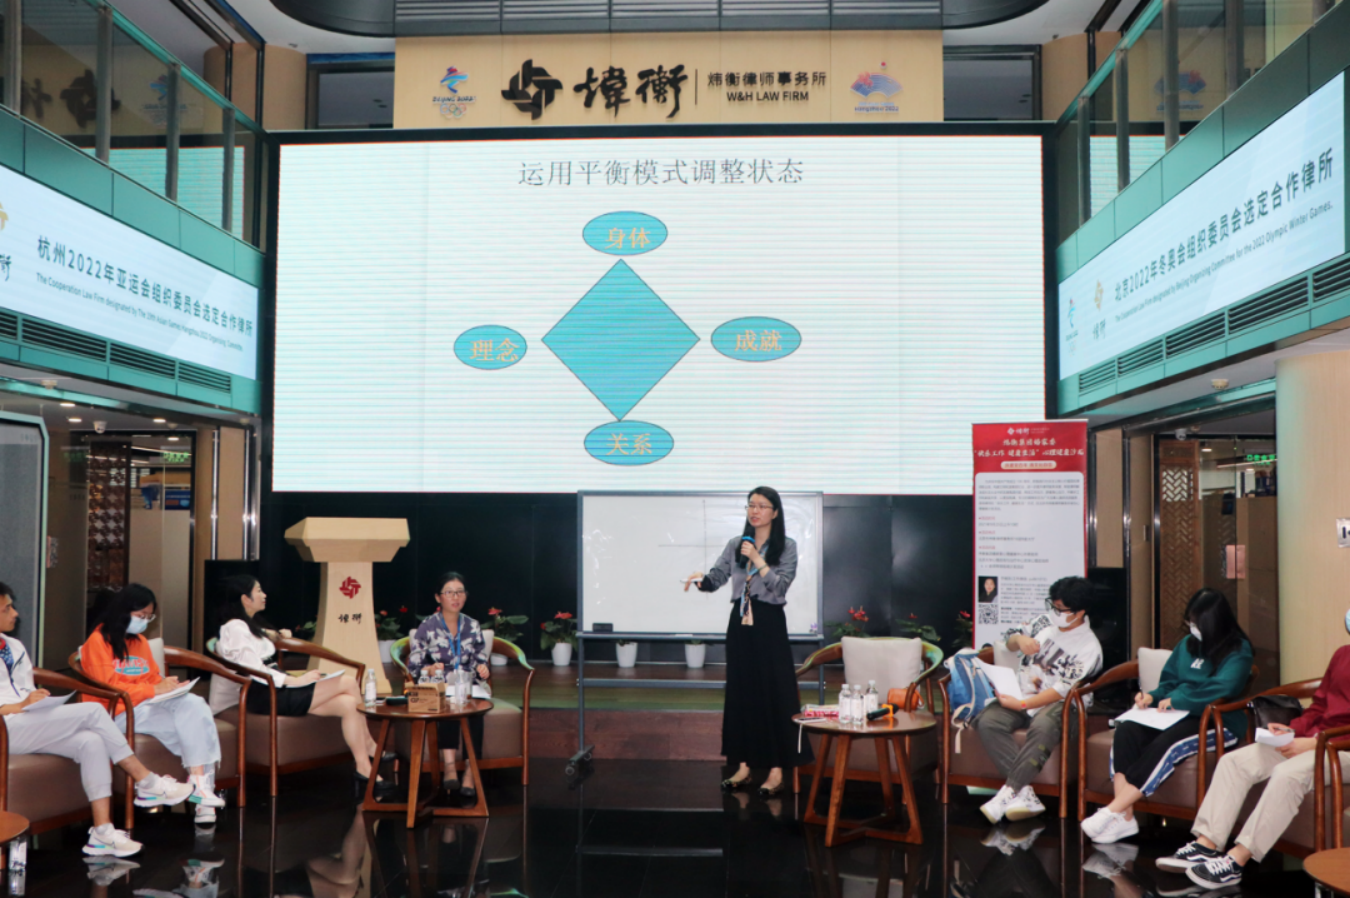 北京市炜衡律师事务所成功举办“快乐工作，健康生活”首都律师心理健康沙龙活动